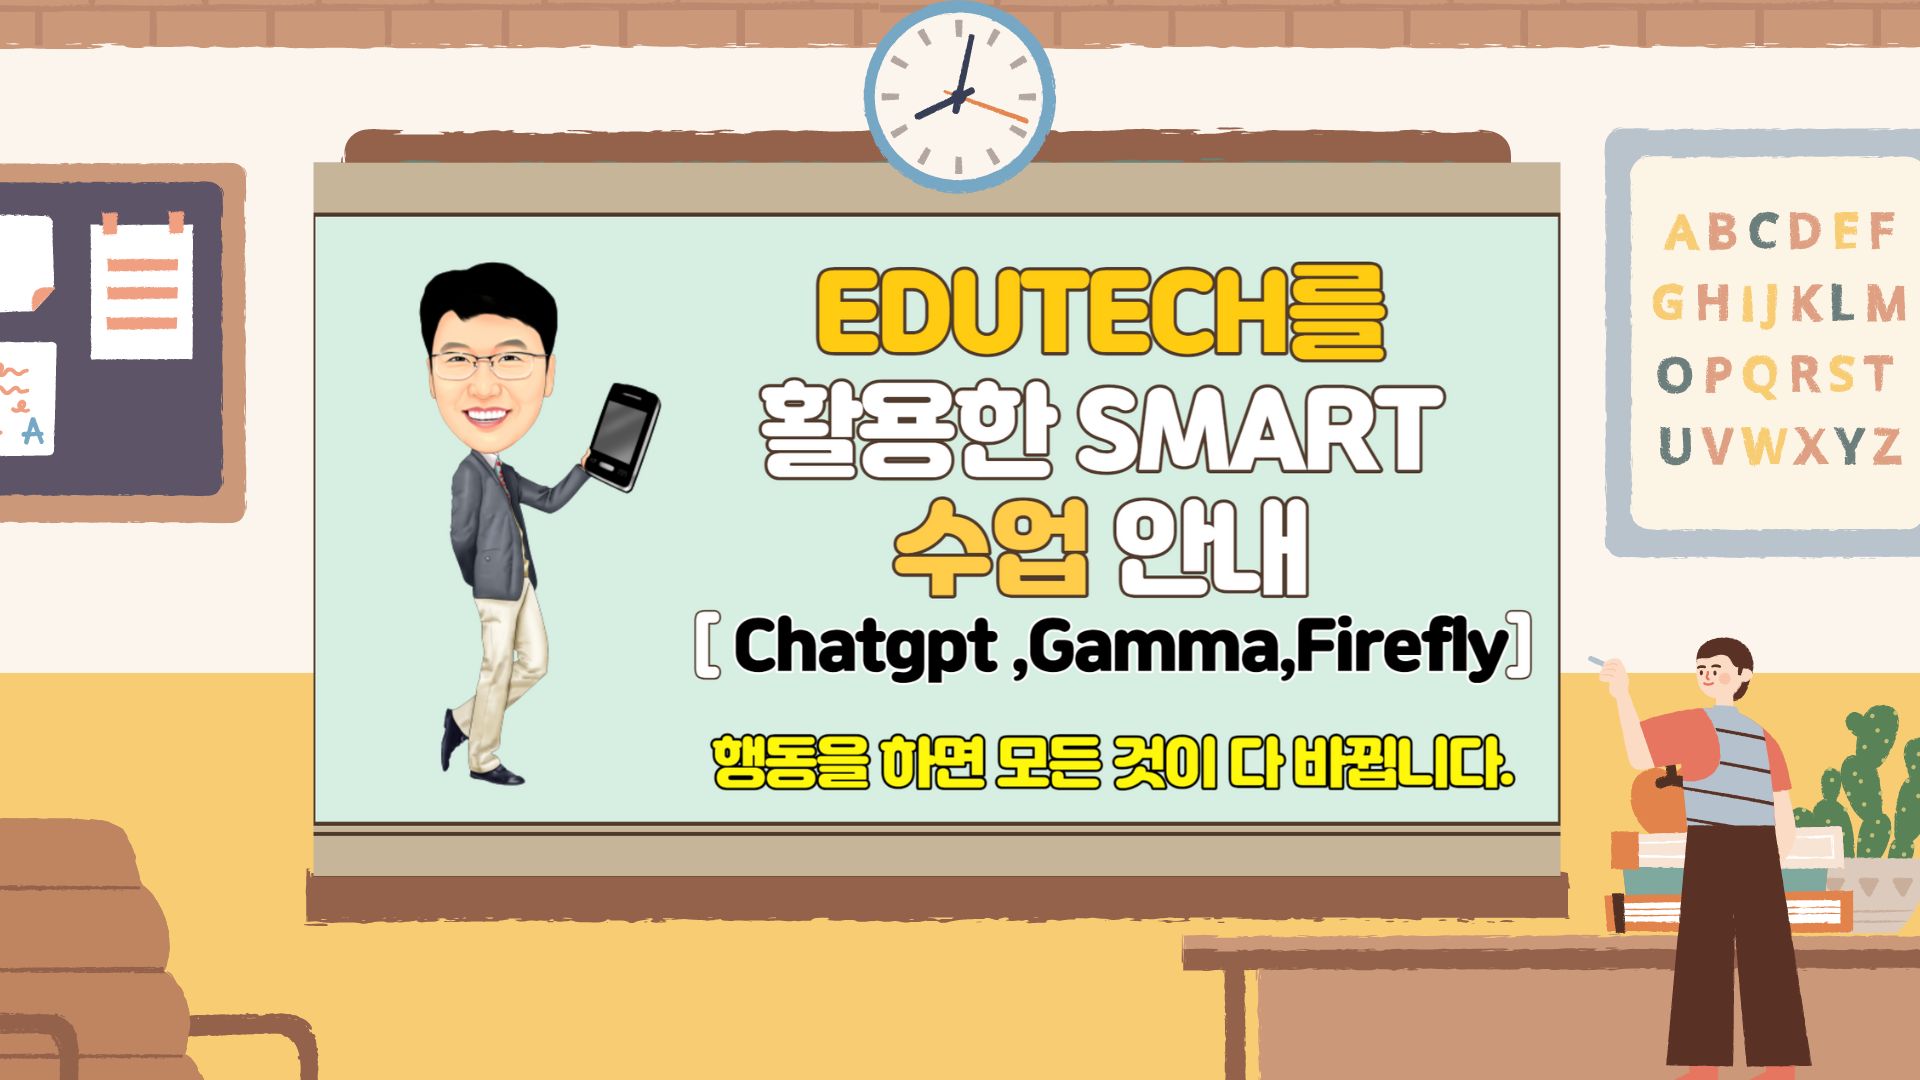 EDUTECH를 활용한 smart 수업 방법 안내 -ChatGPT 